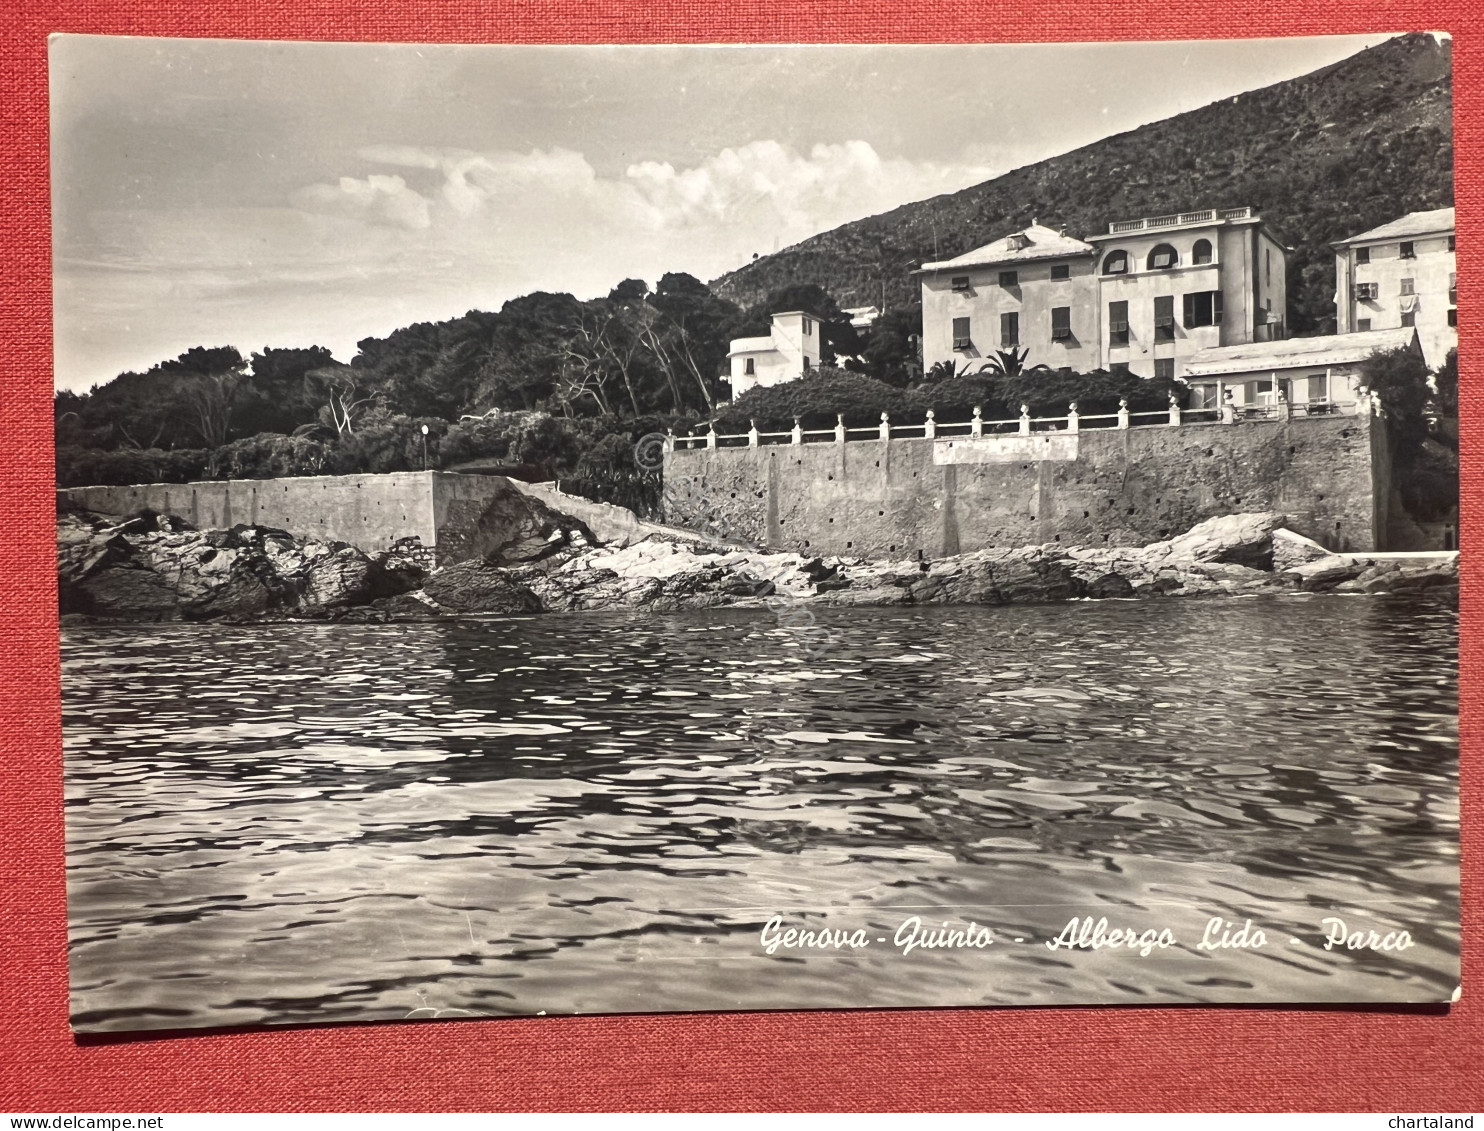 Cartolina - Genova Quinto - Albergo Lido - Parco - 1960 Ca. - Genova (Genua)